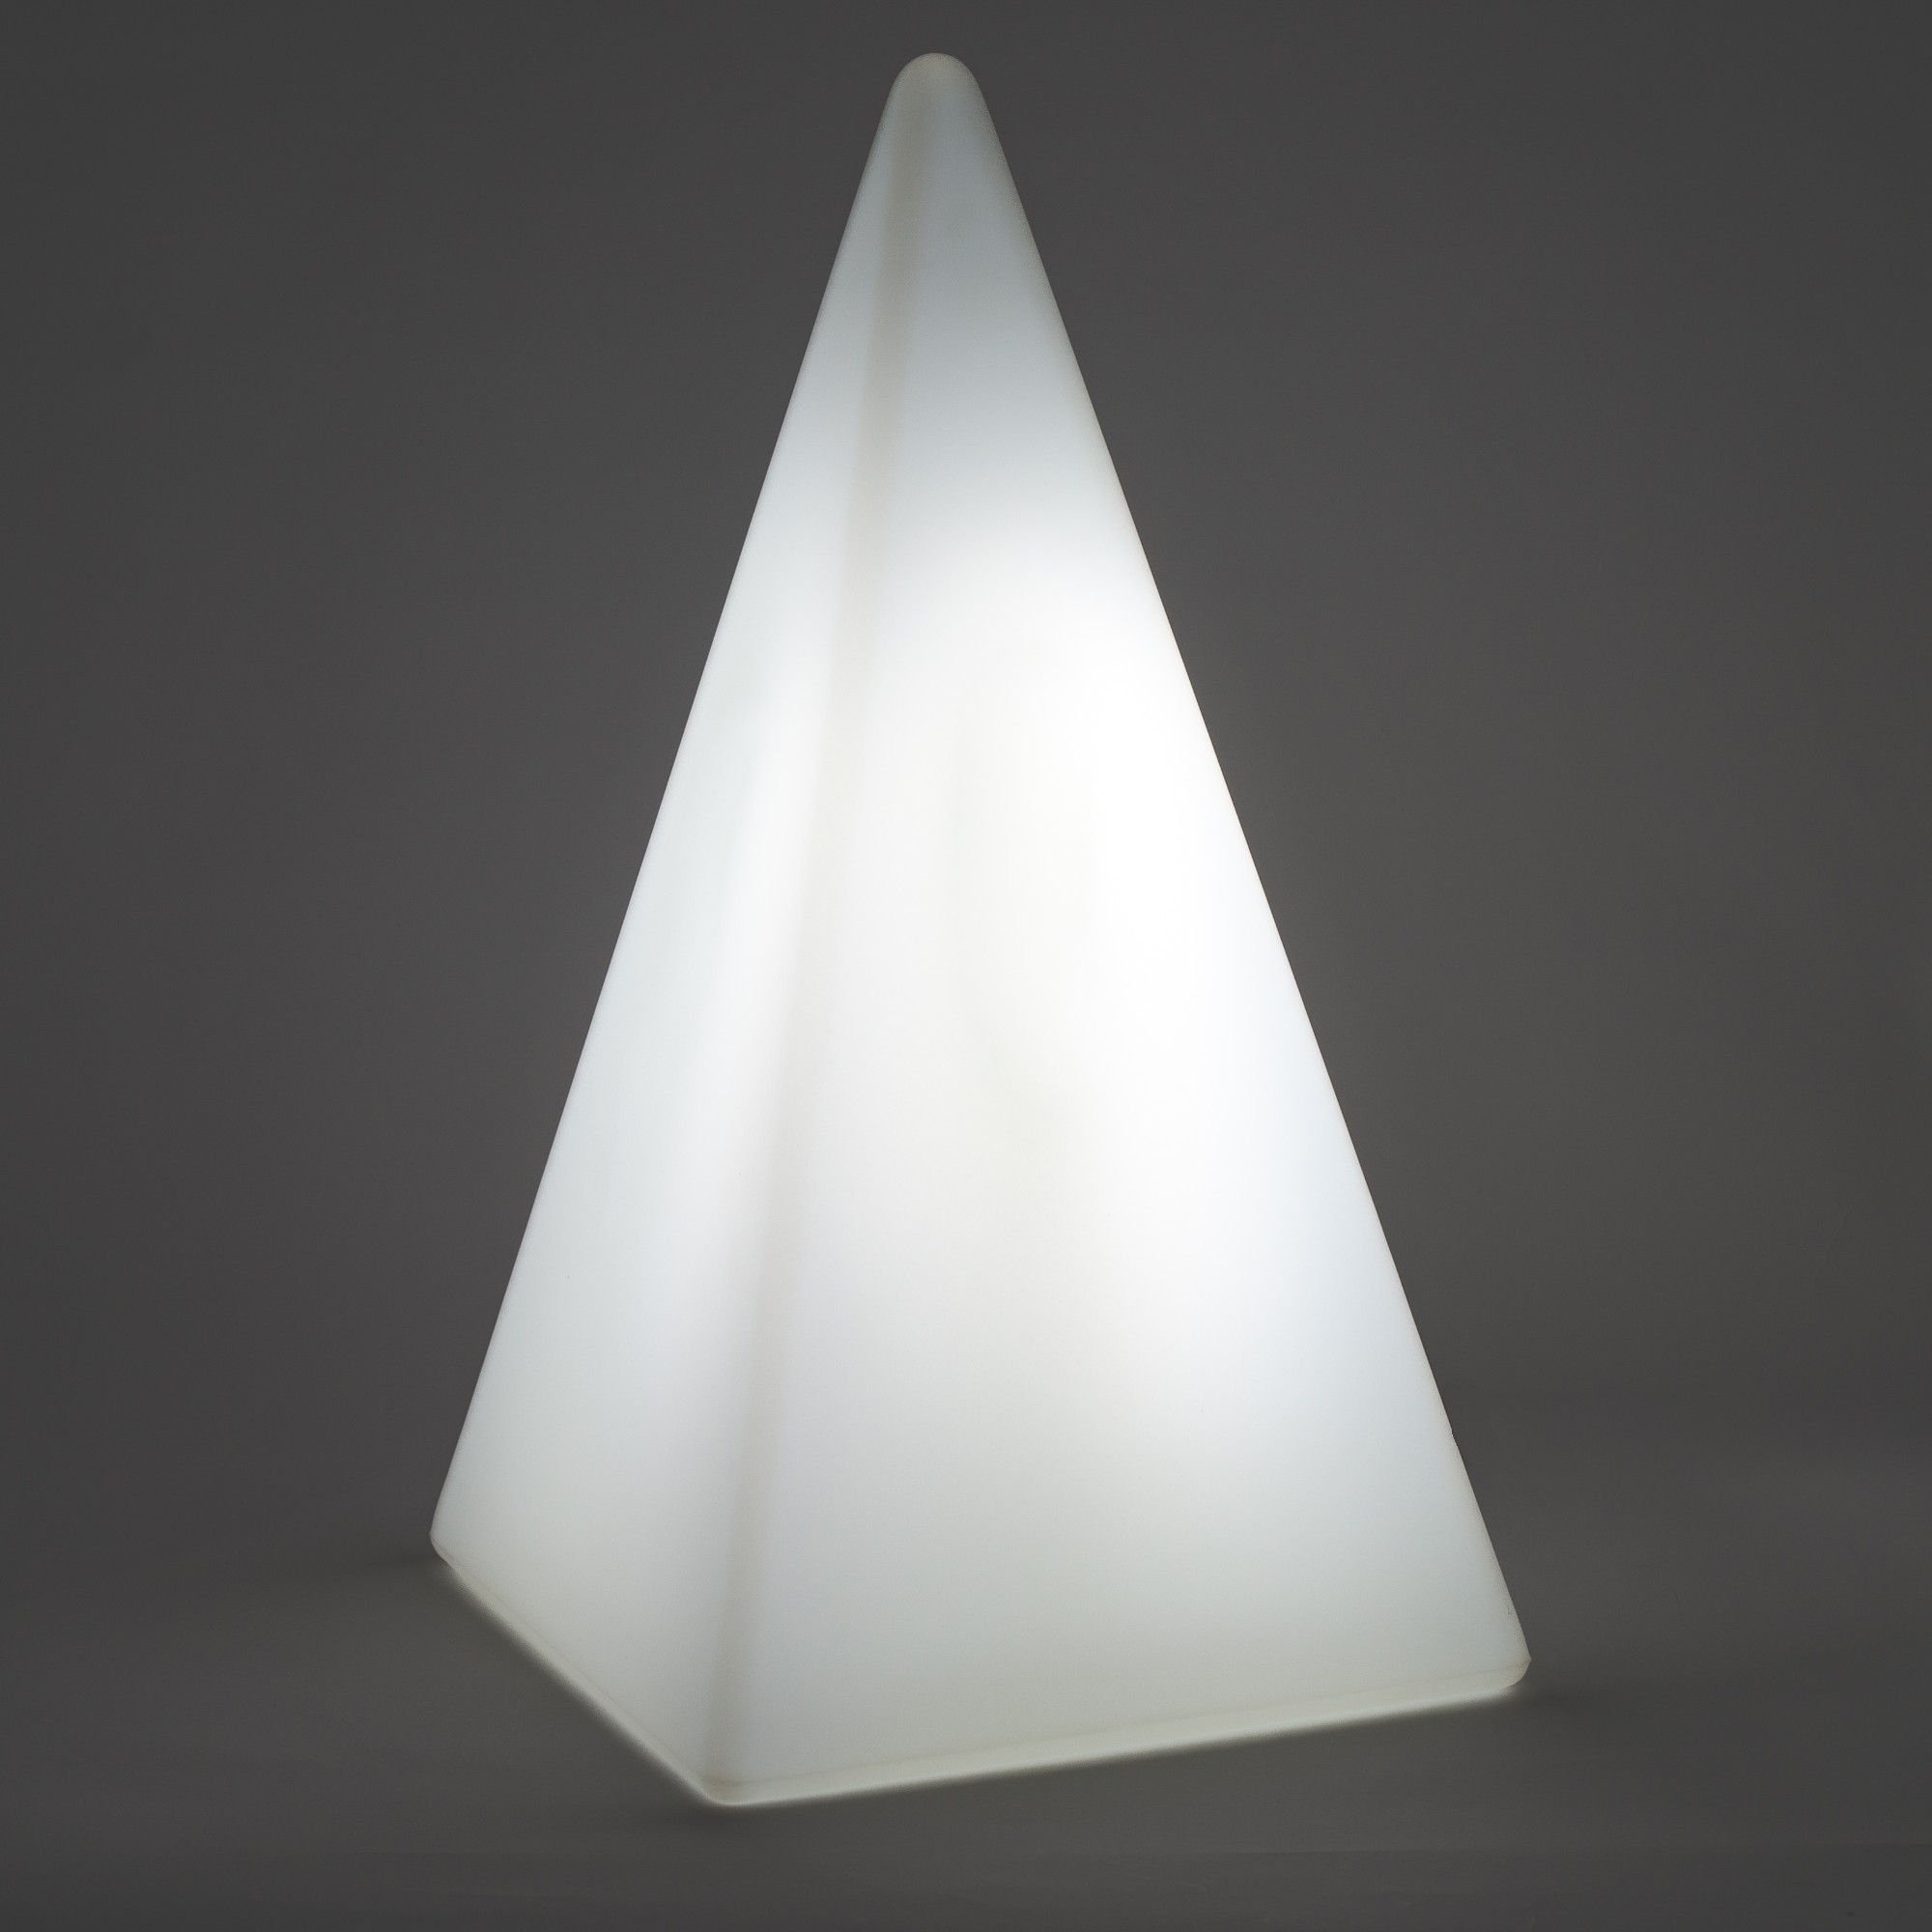 70105 Standleuchte Pyramide 36 cm der Firma EPSTEIN Design Leuchten